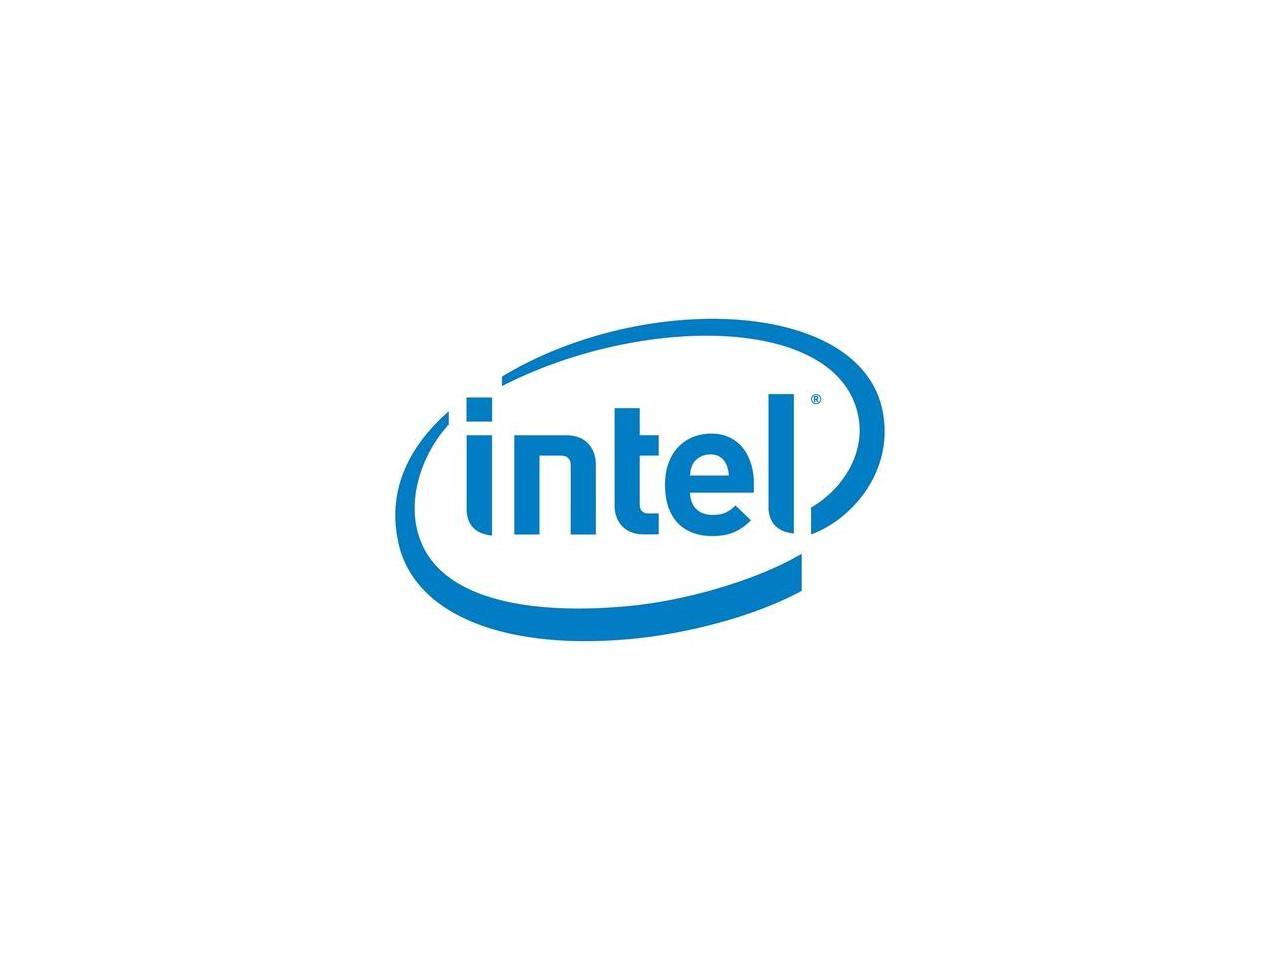 Intel CC VROCSTANMOD Virtual RAID standard BD 5Module (VROCSTANMOD)